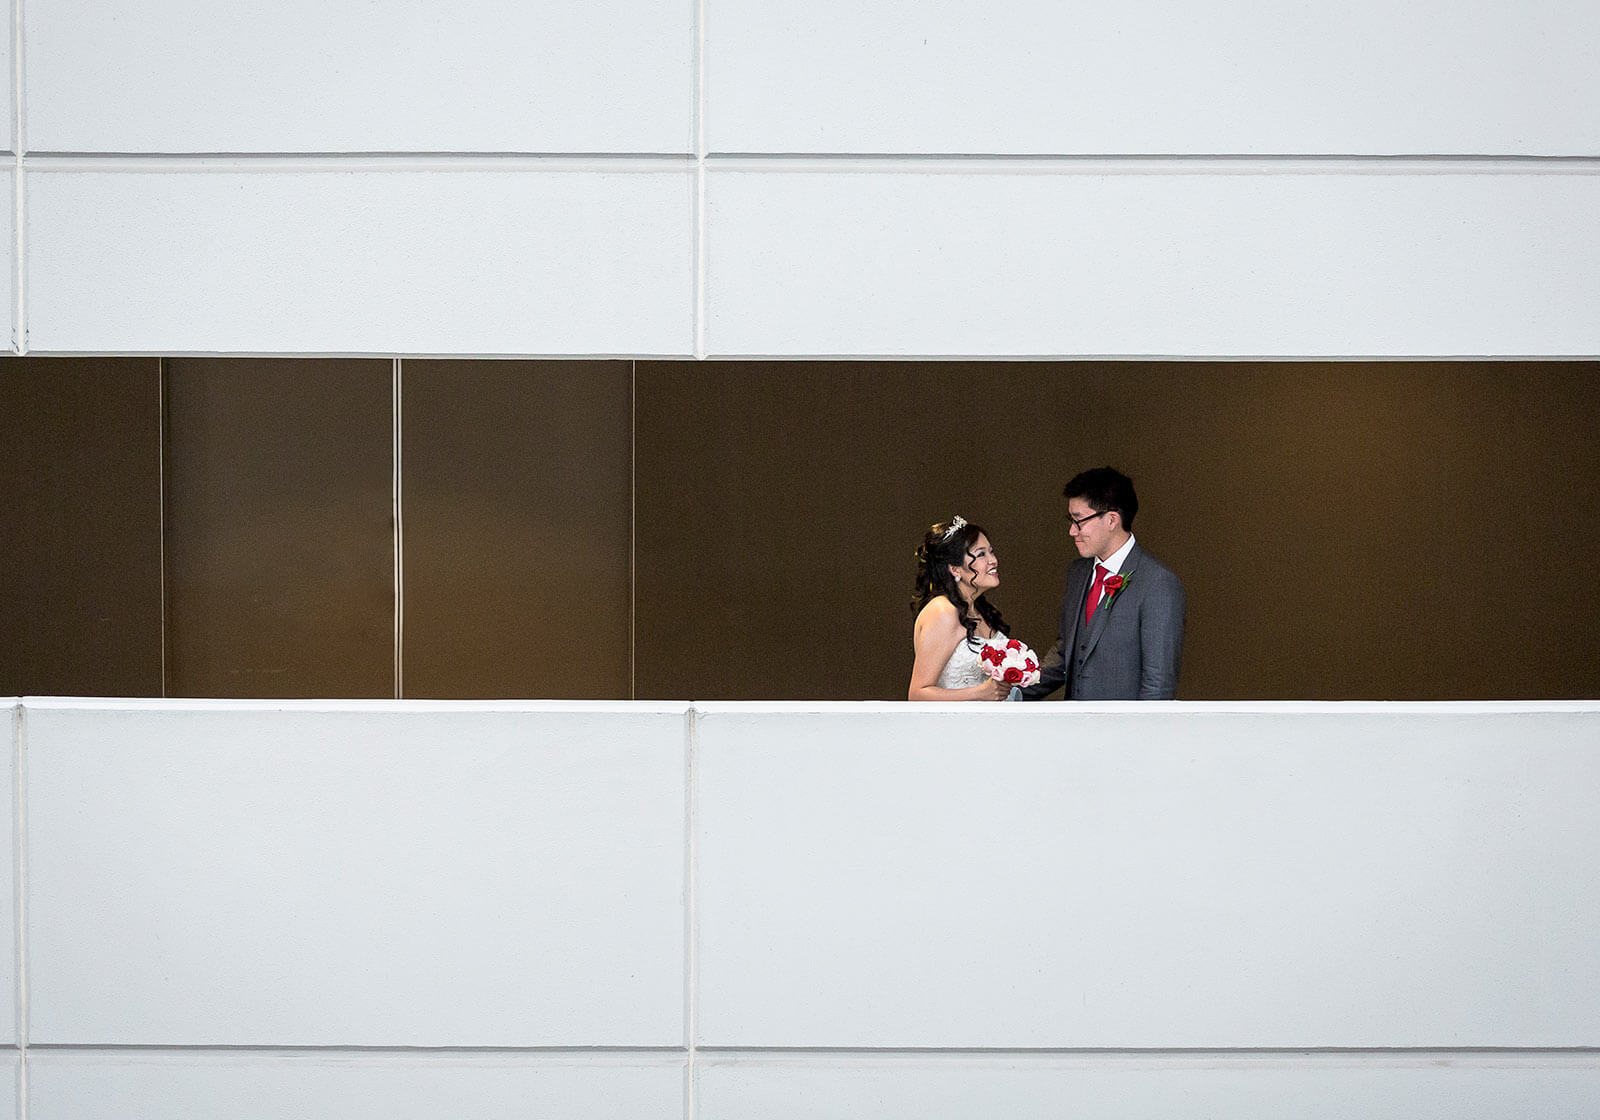 Hyatt Hotel Reception, Perth Wedding Photography by Peter Adams-Shawn